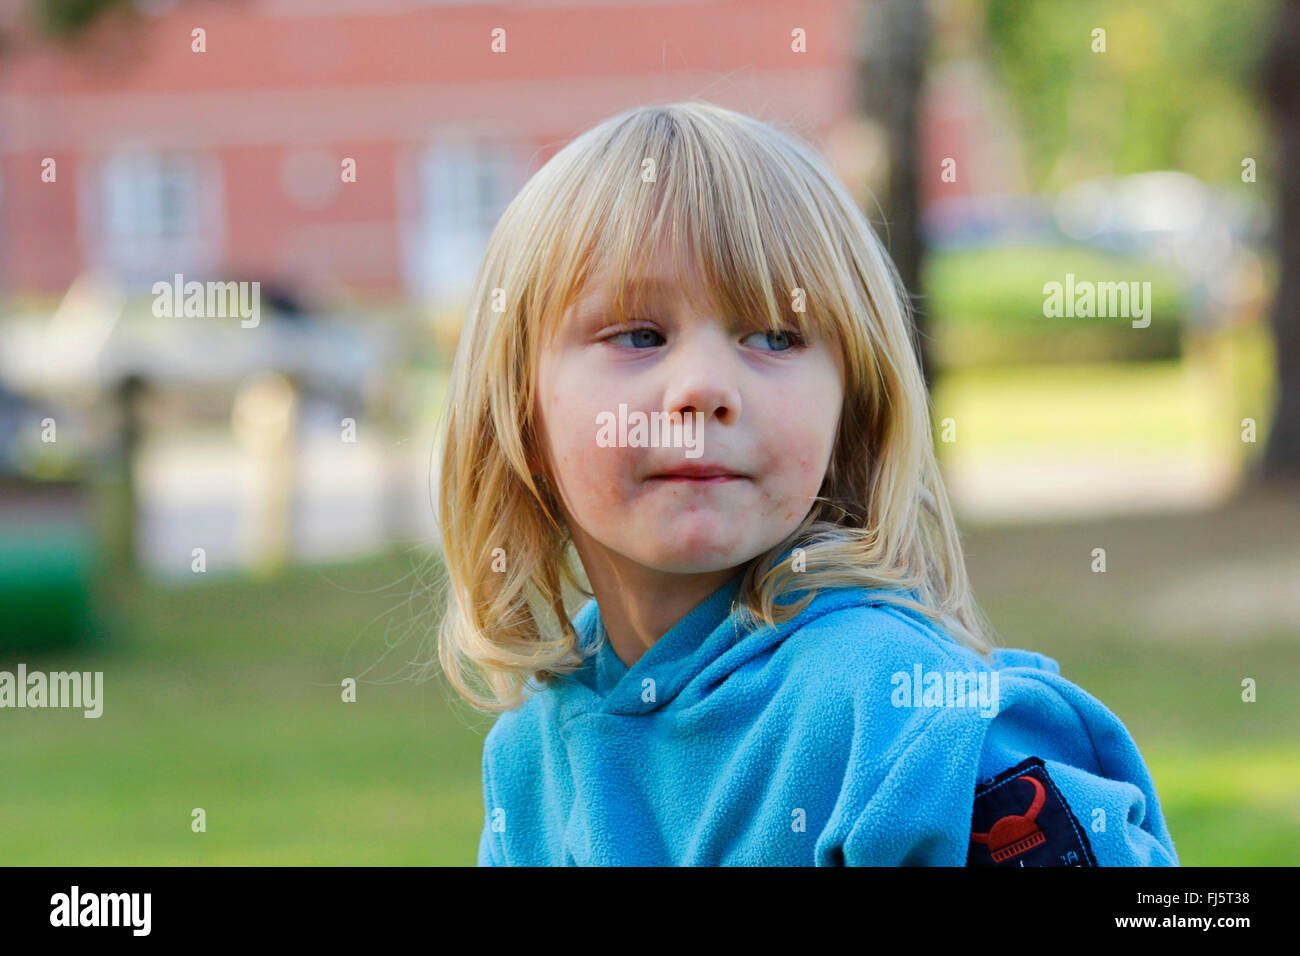 Chico con largo pelo rubio, retrato de un niño, Alemania Foto de stock